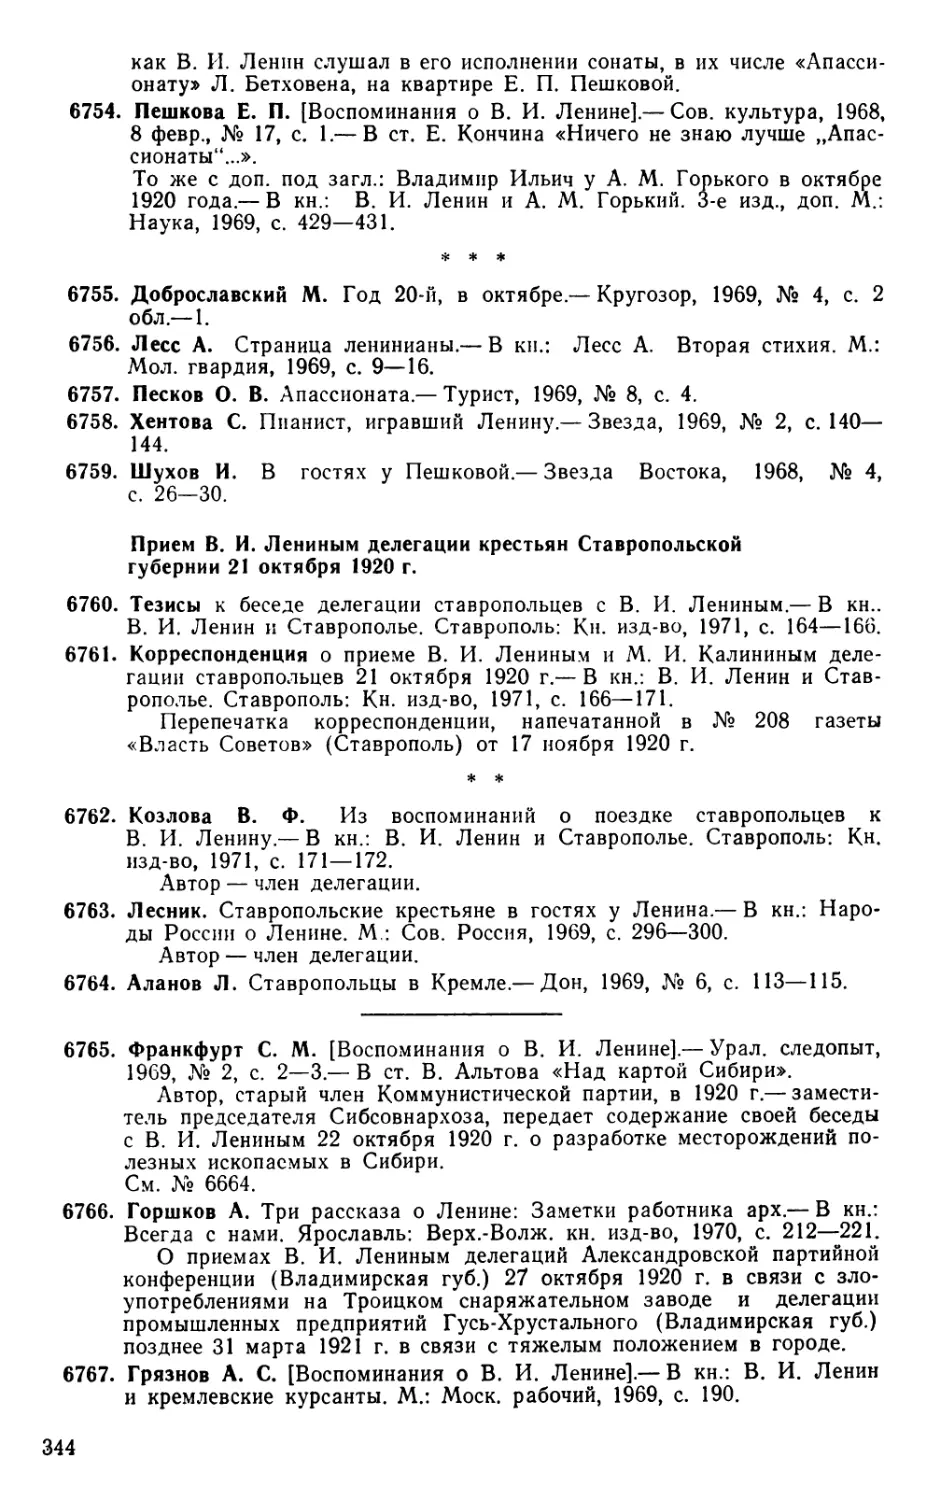 Прием В. И. Лениным делегации крестьян Ставропольской губернии 21 октября 1920 г.